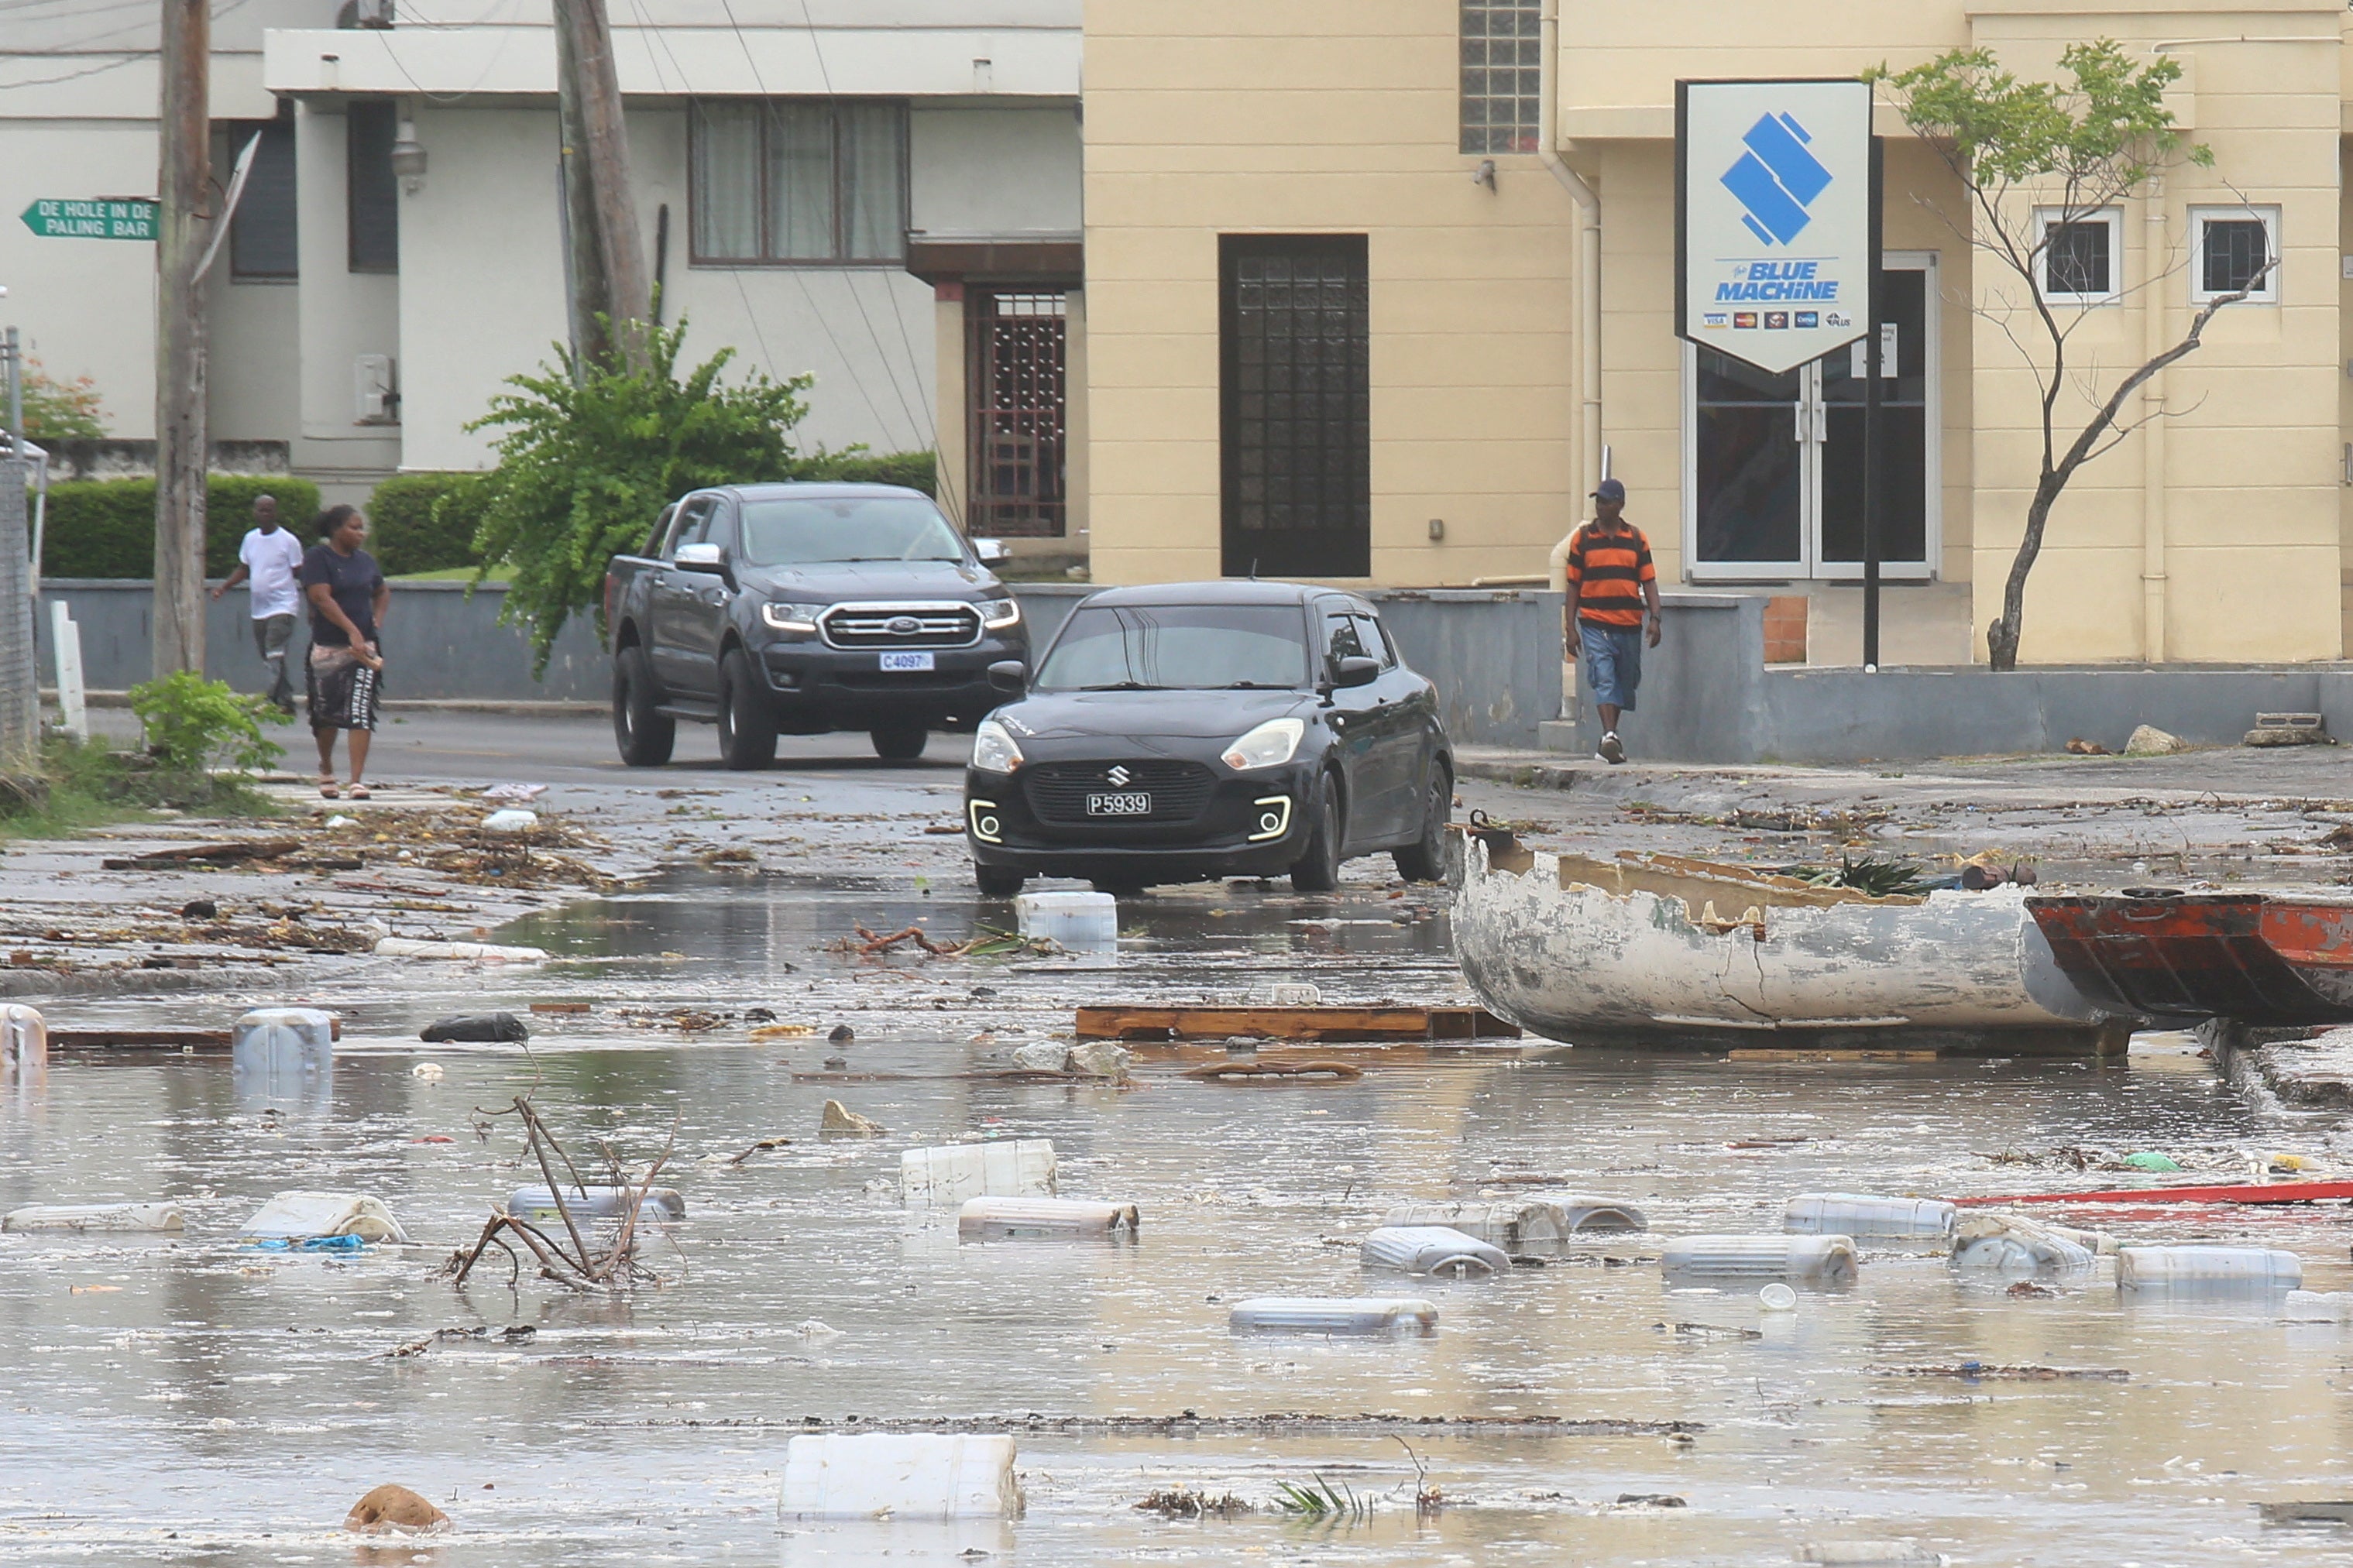 سيارات تسير في شارع مليء بالحطام في بريدجتاون، بربادوس، بعد أن ضرب إعصار بيريل الجزيرة.